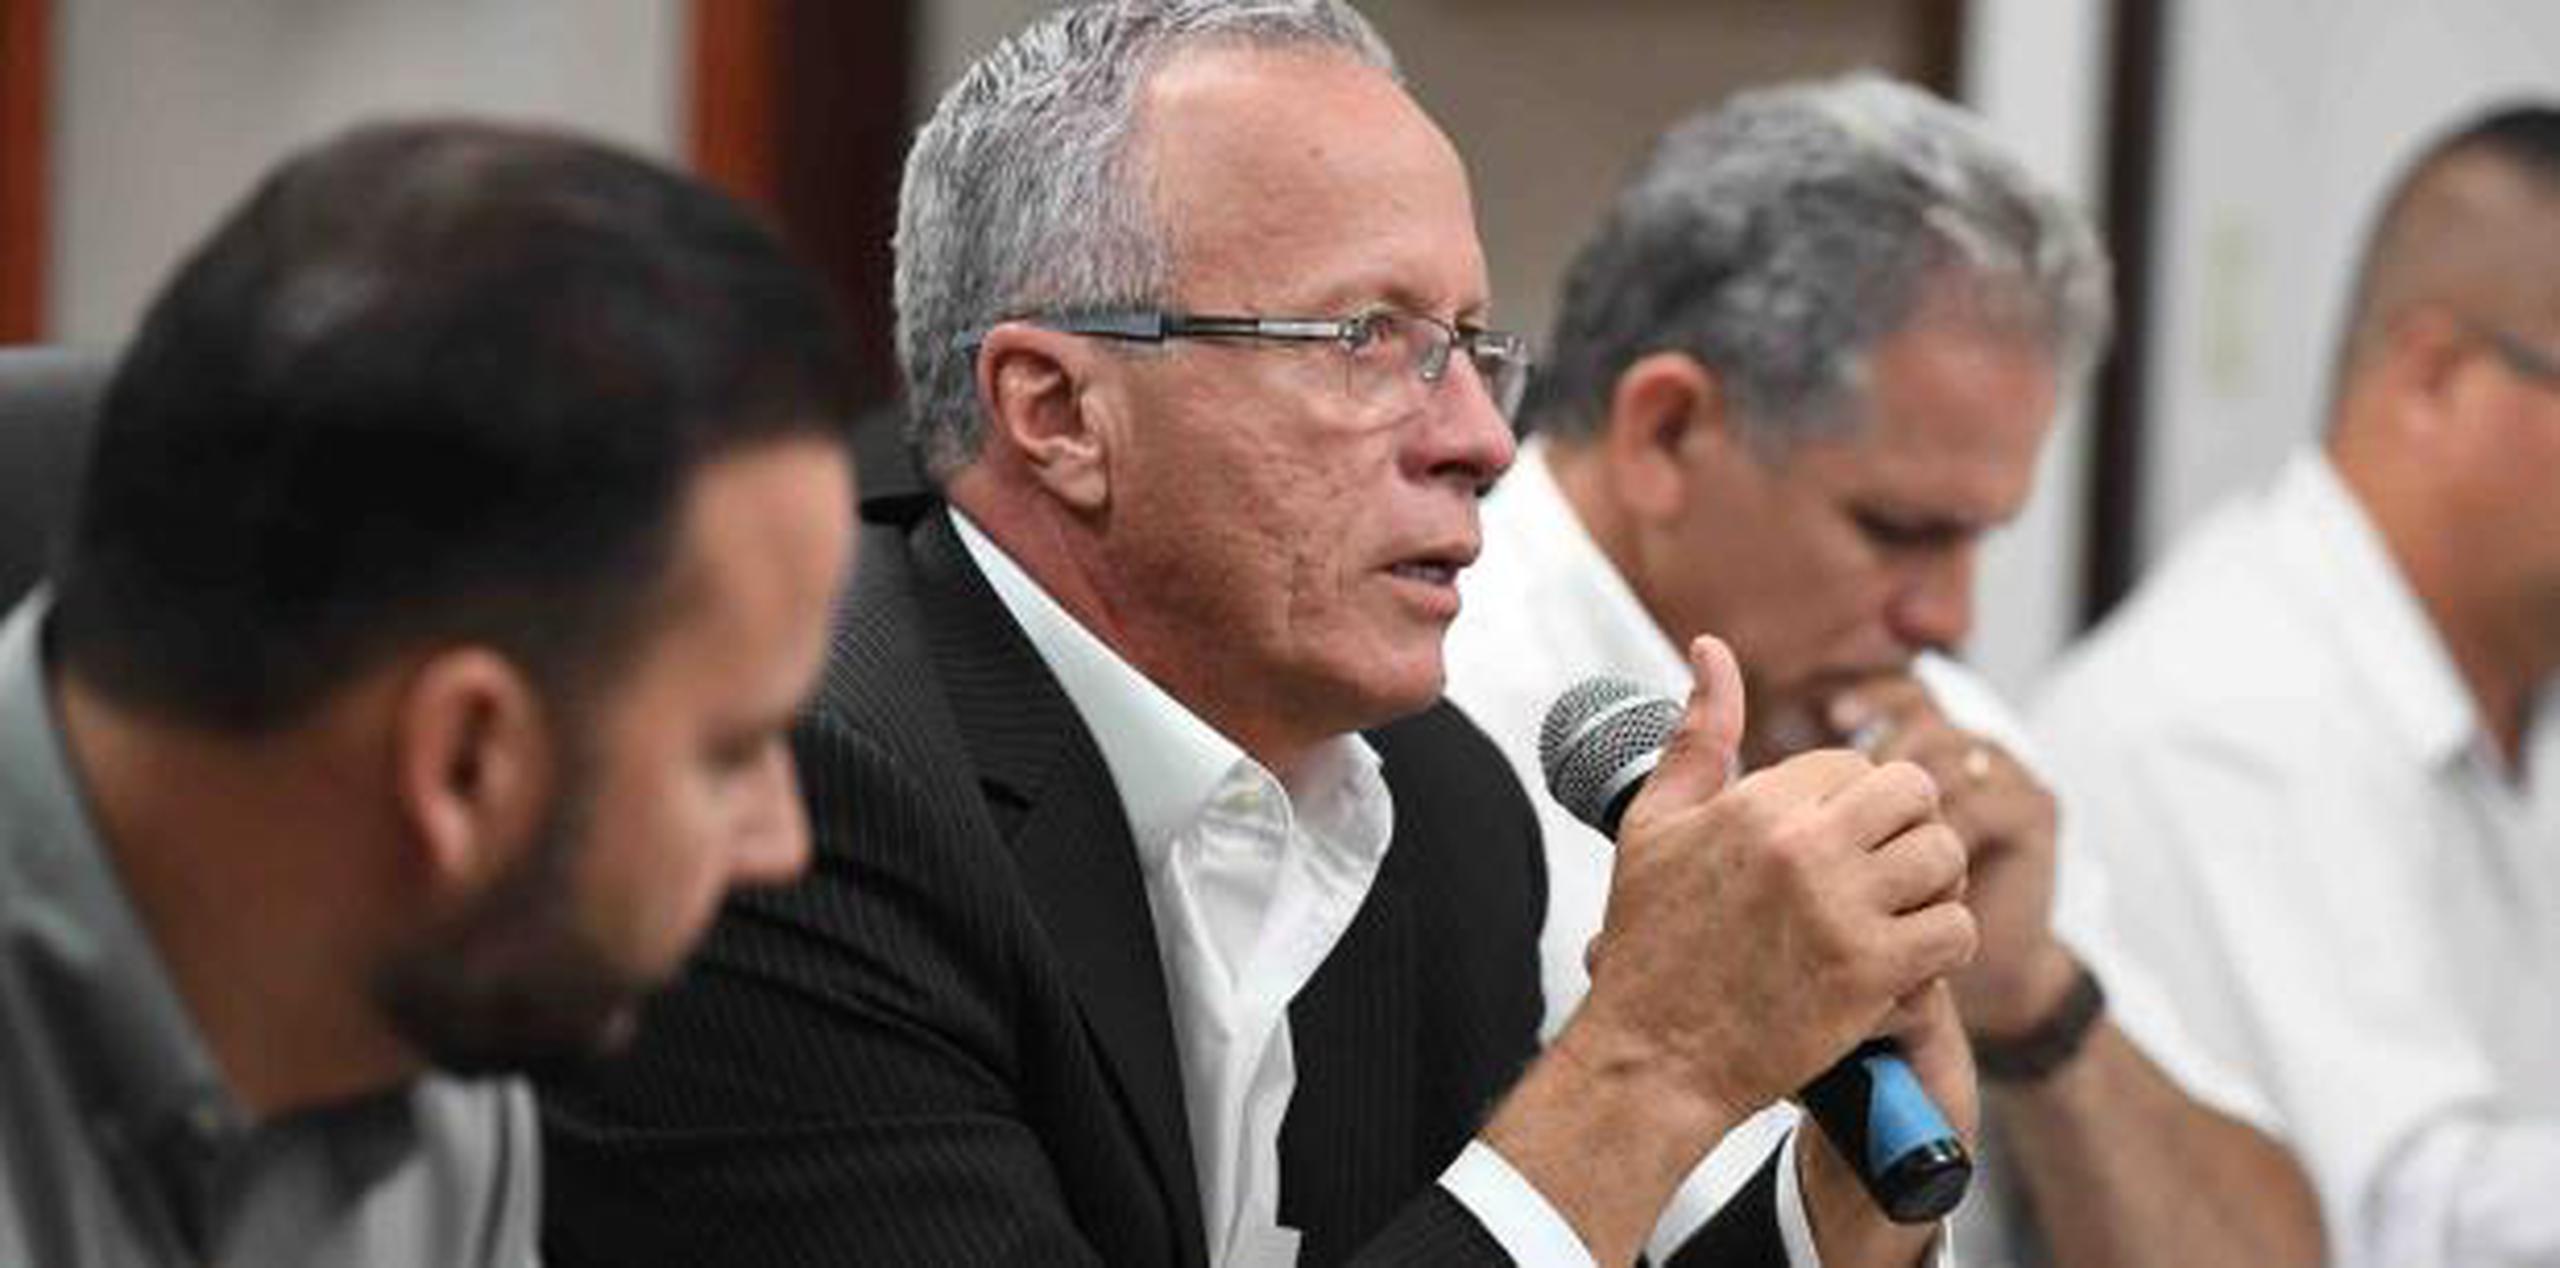 El presidente de la Asociación, Rolando Ortiz, indicó que los ejecutivos municipales salieron frustrados de una reunión que sostuvieron con el secretario del DTOP. (luis.alcaladelolmo@gfrmedia.com)